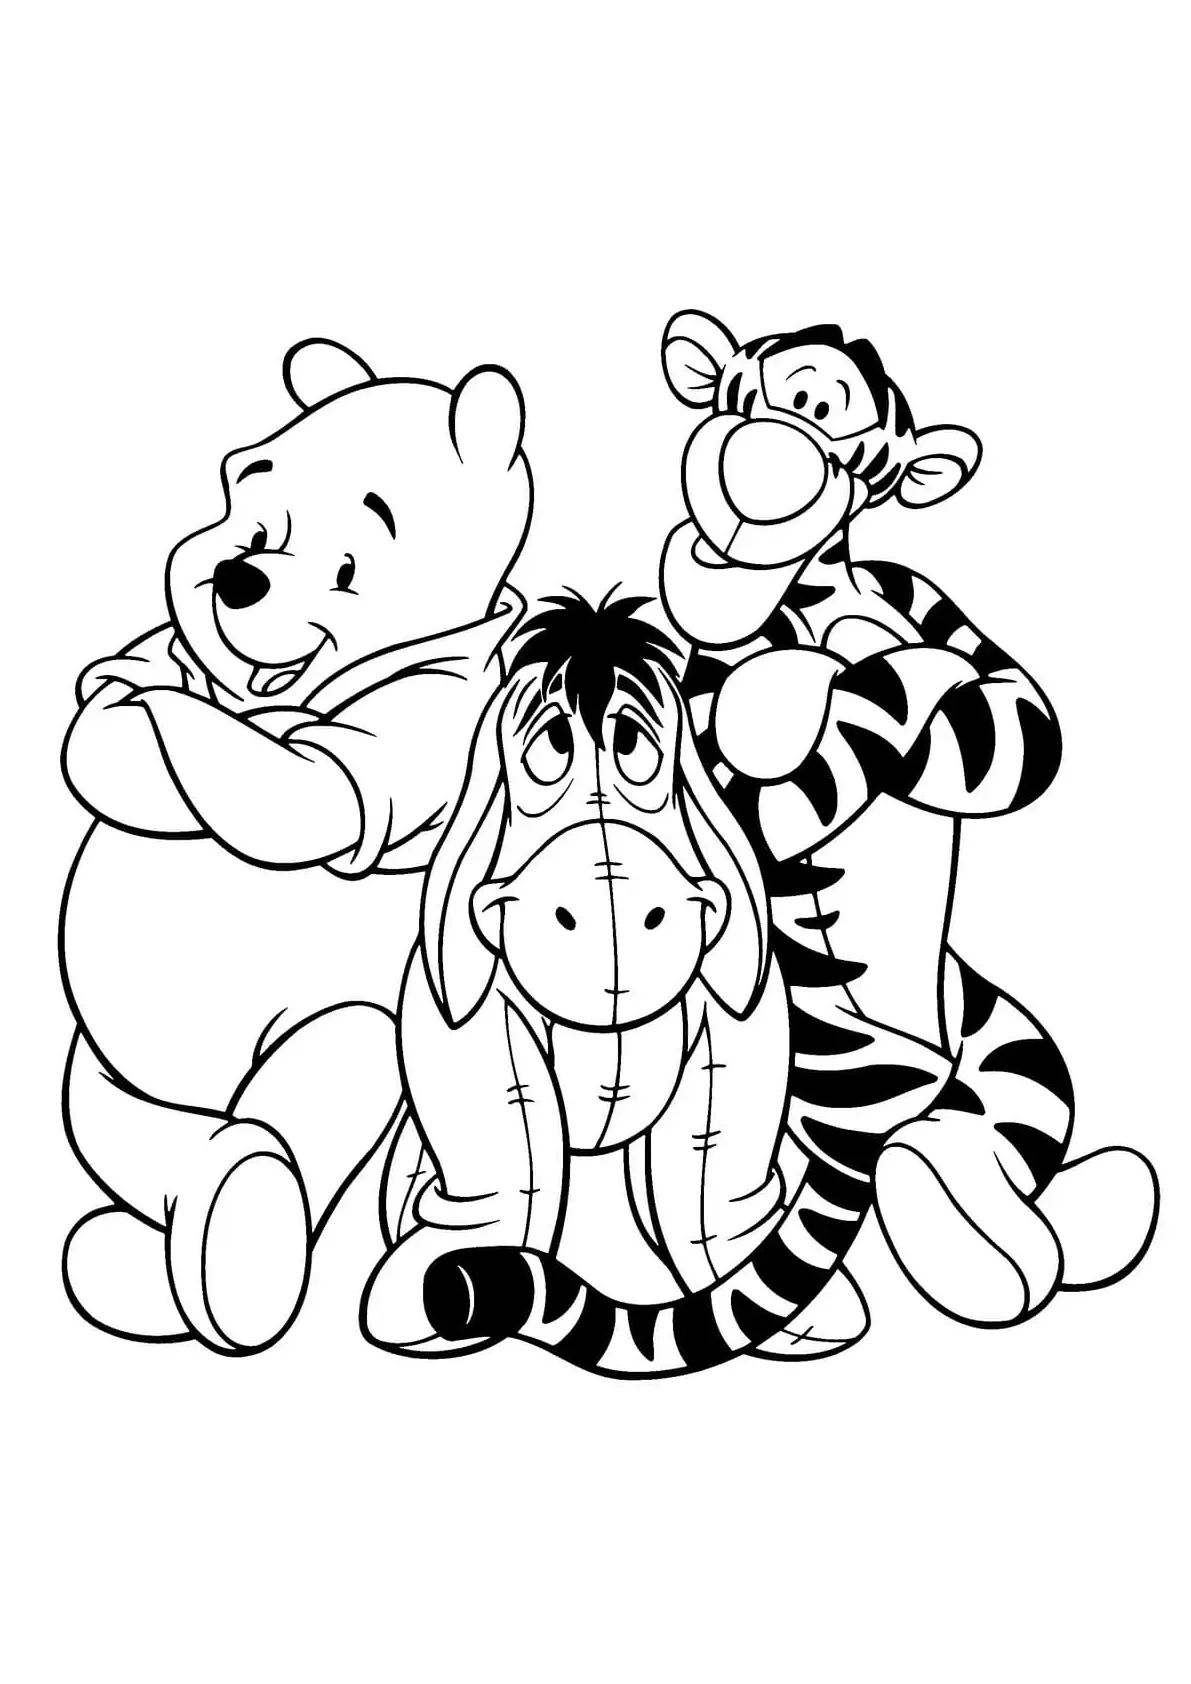 Imagen para colorear de Winnie the Pooh con sus amigos Igor y Tigger